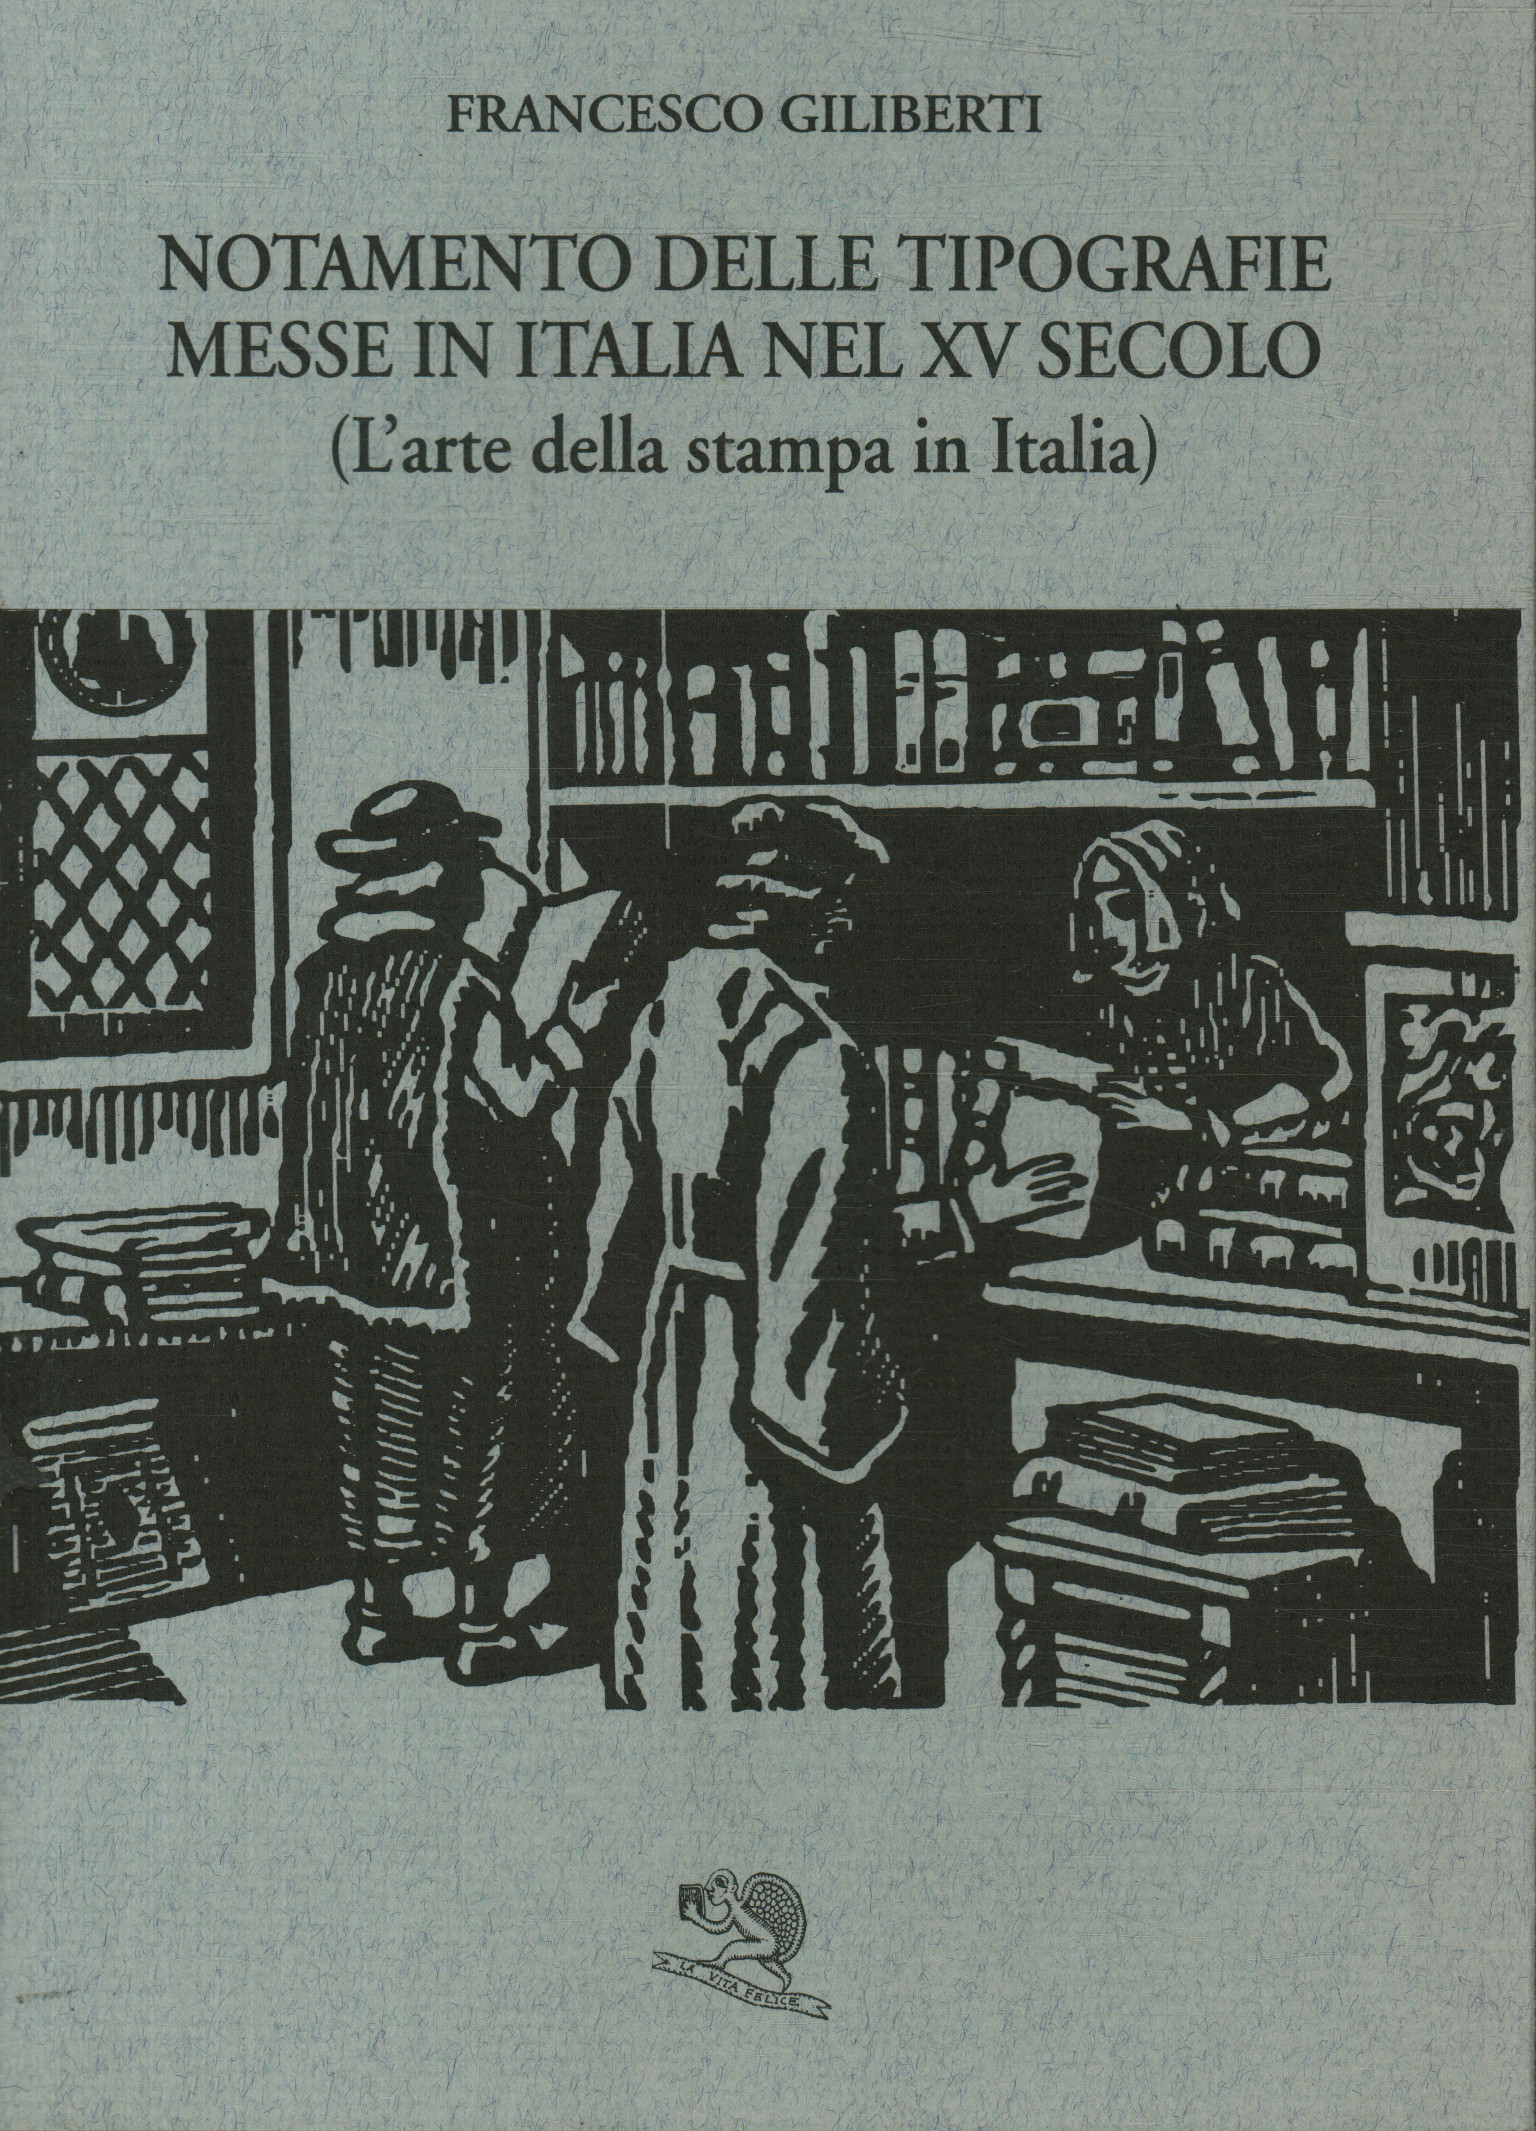 Notation der Typografien in Ital